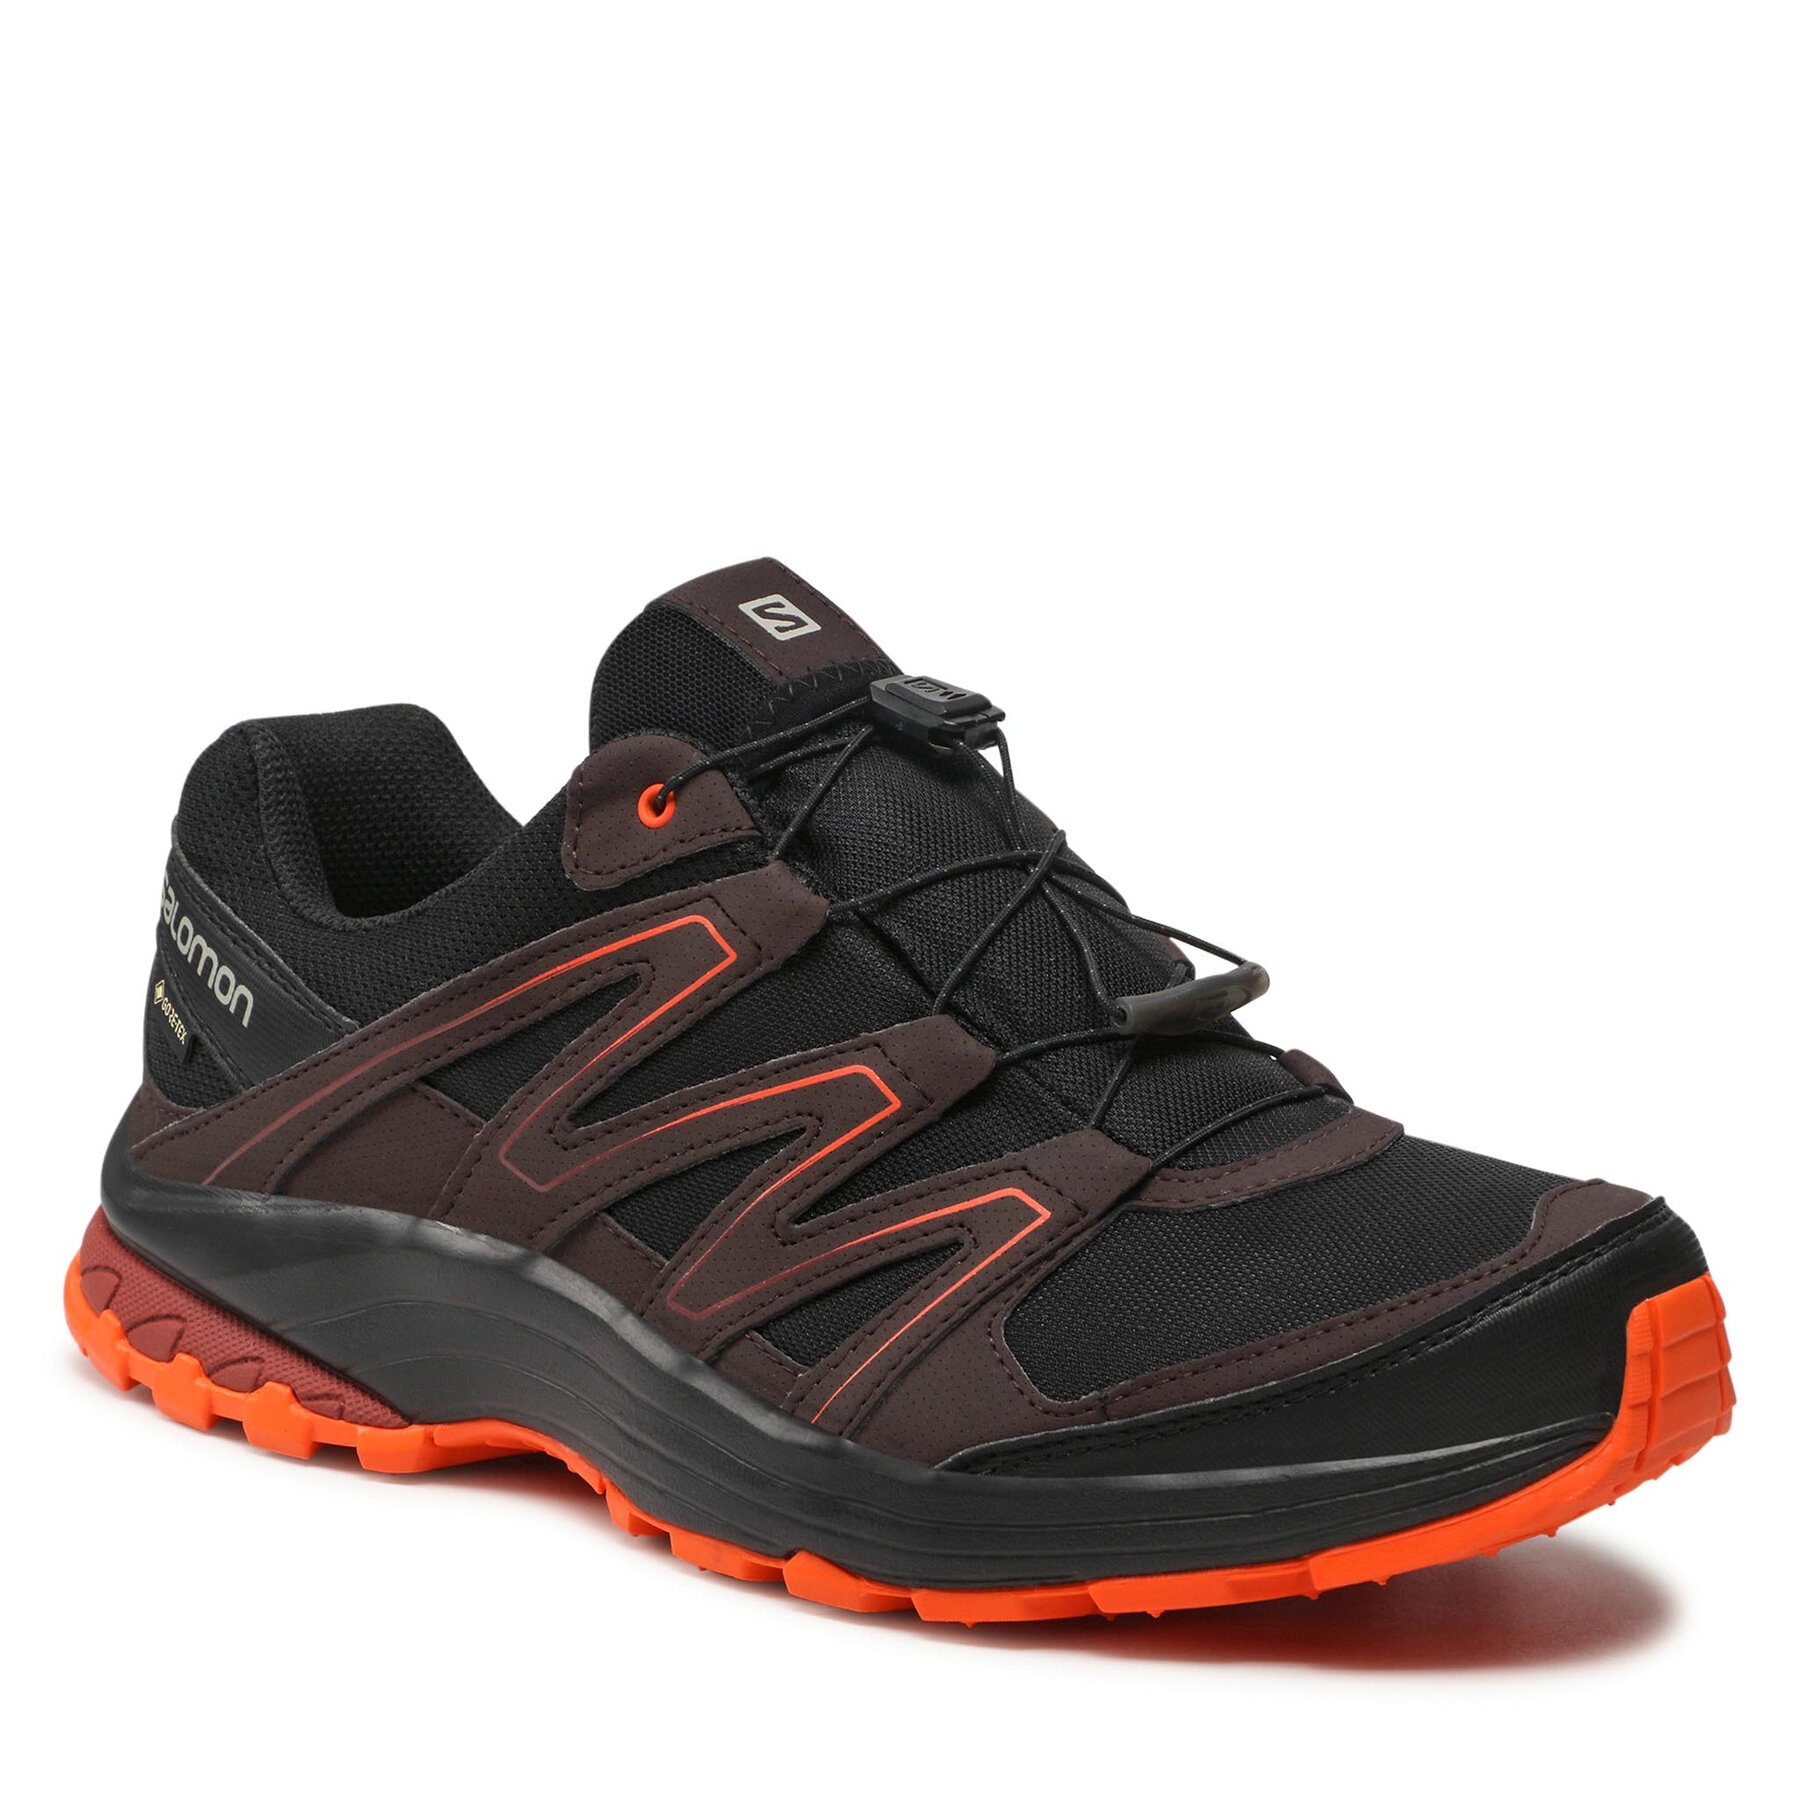 Pantofi Salomon Sollia Gtx GORE-TEX 412318 31 V0 Black/Chocolate Plum/Red Orange 412318 imagine 2022 reducere